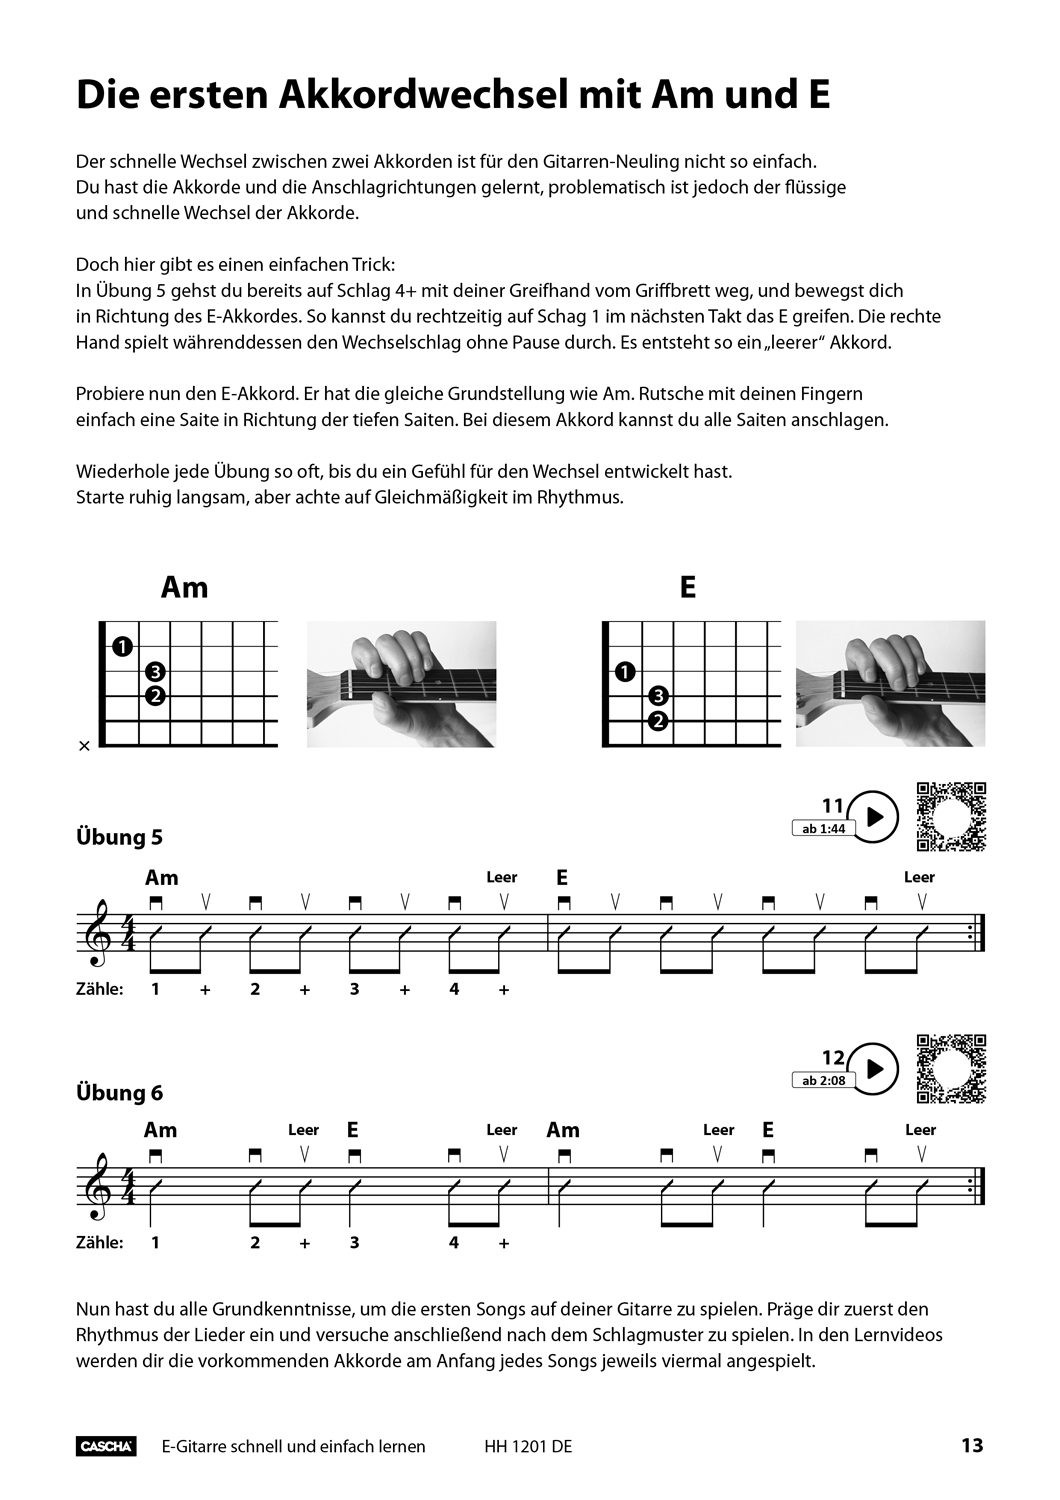 E-Gitarre - Schnell und einfach lernen Seiten 6